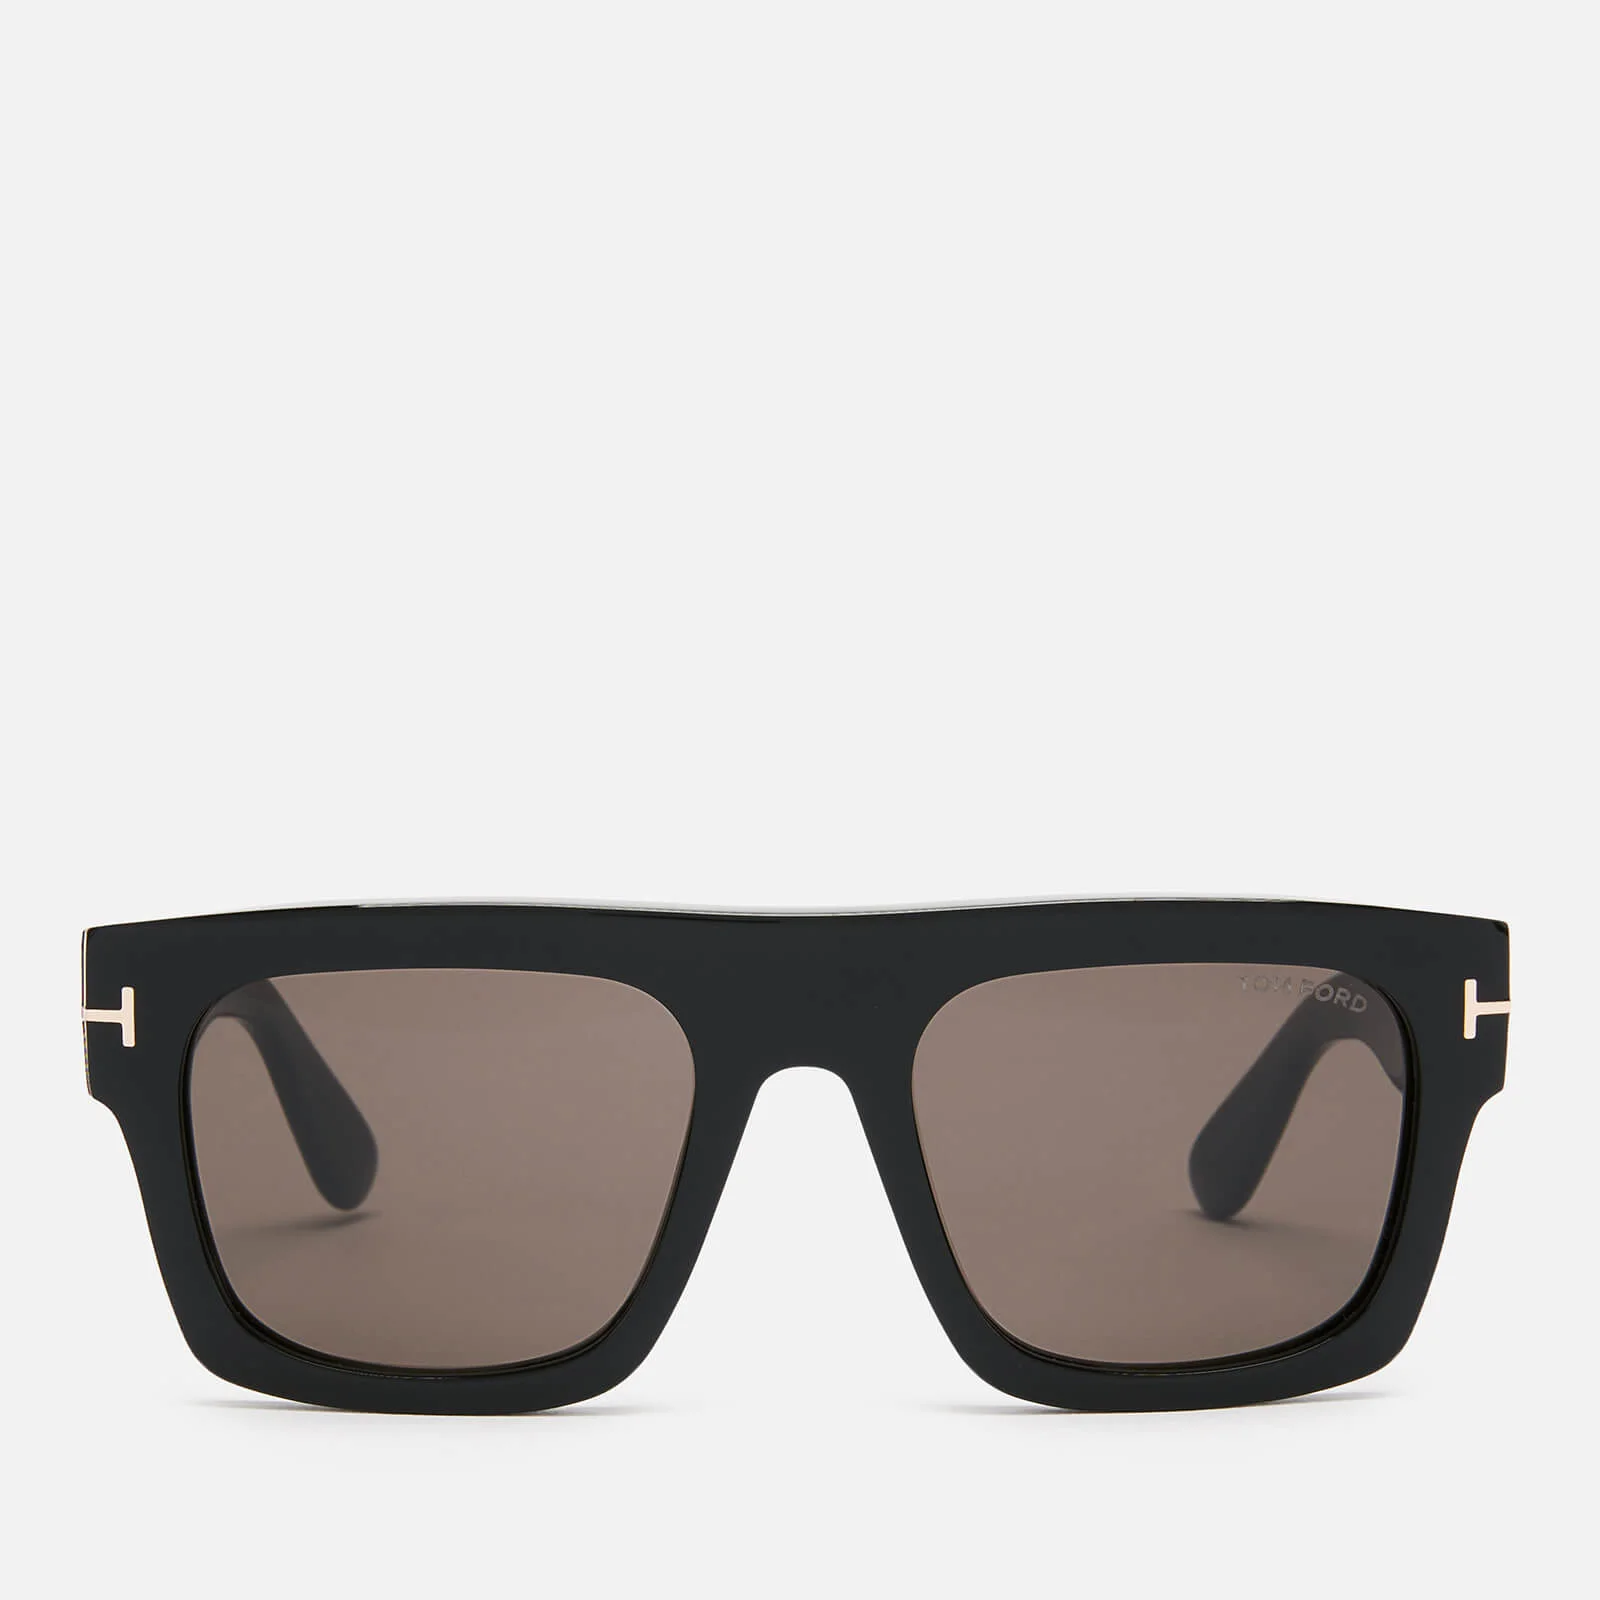 Tom Ford Men's Fausto Sunglasses - Black Image 1